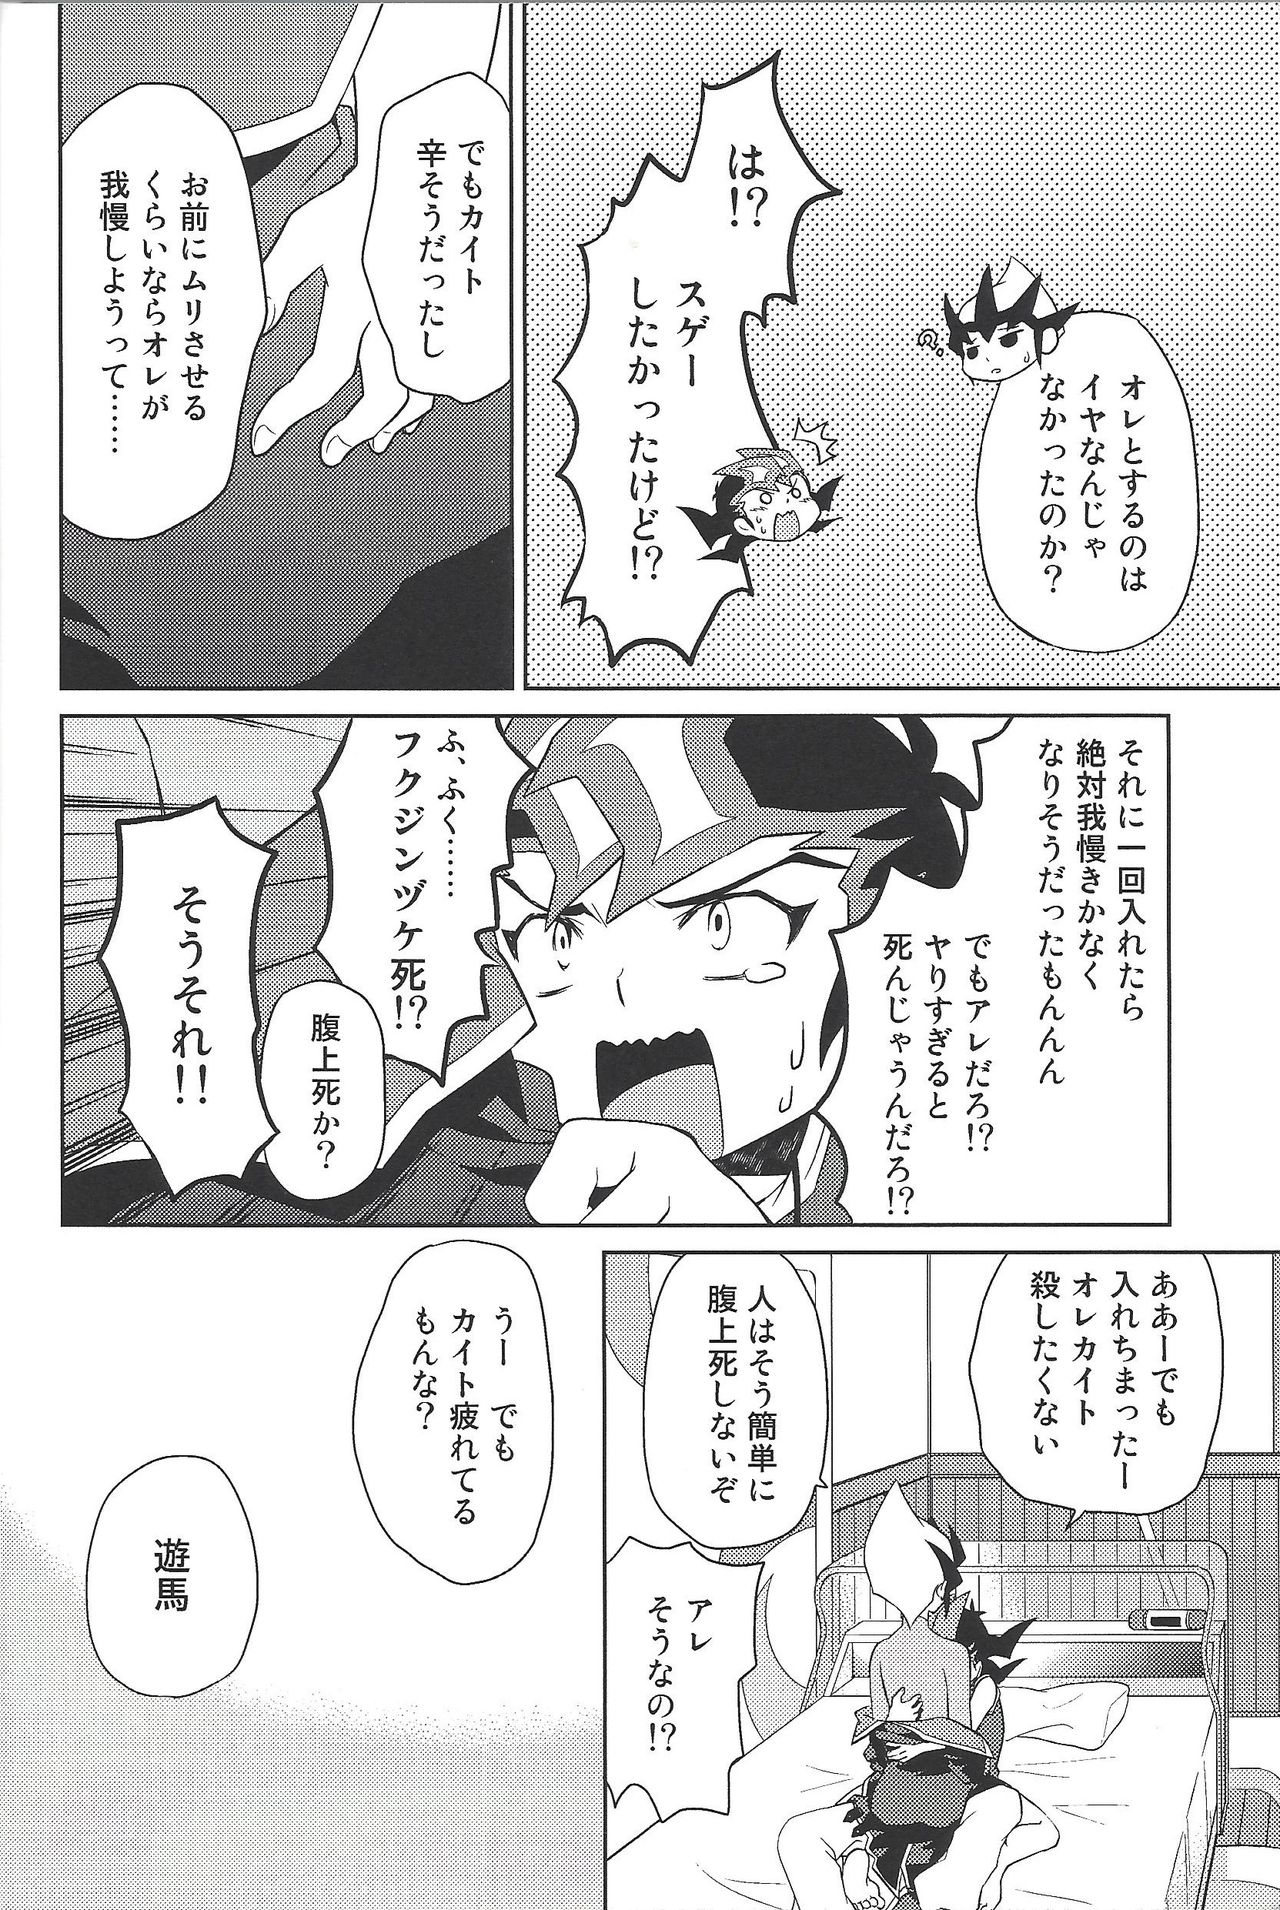 (Sennan Battle Phase 13) [G-da (kyugen)] 384400 Km-saki no hana o taoru (Yu-Gi-Oh! ZEXAL) page 23 full